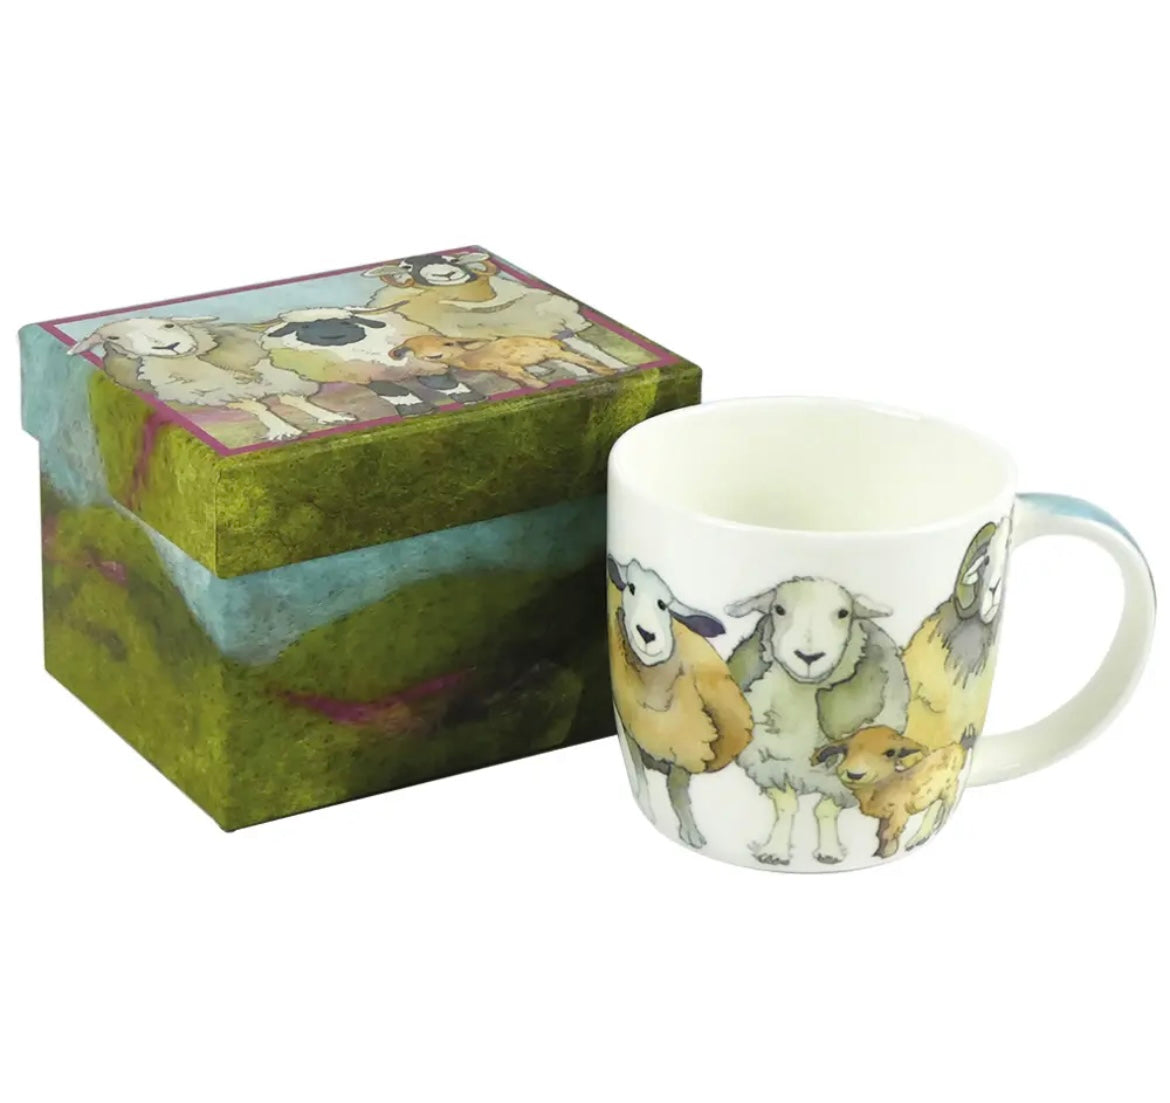 Emma Ball bone china mug in a gift box